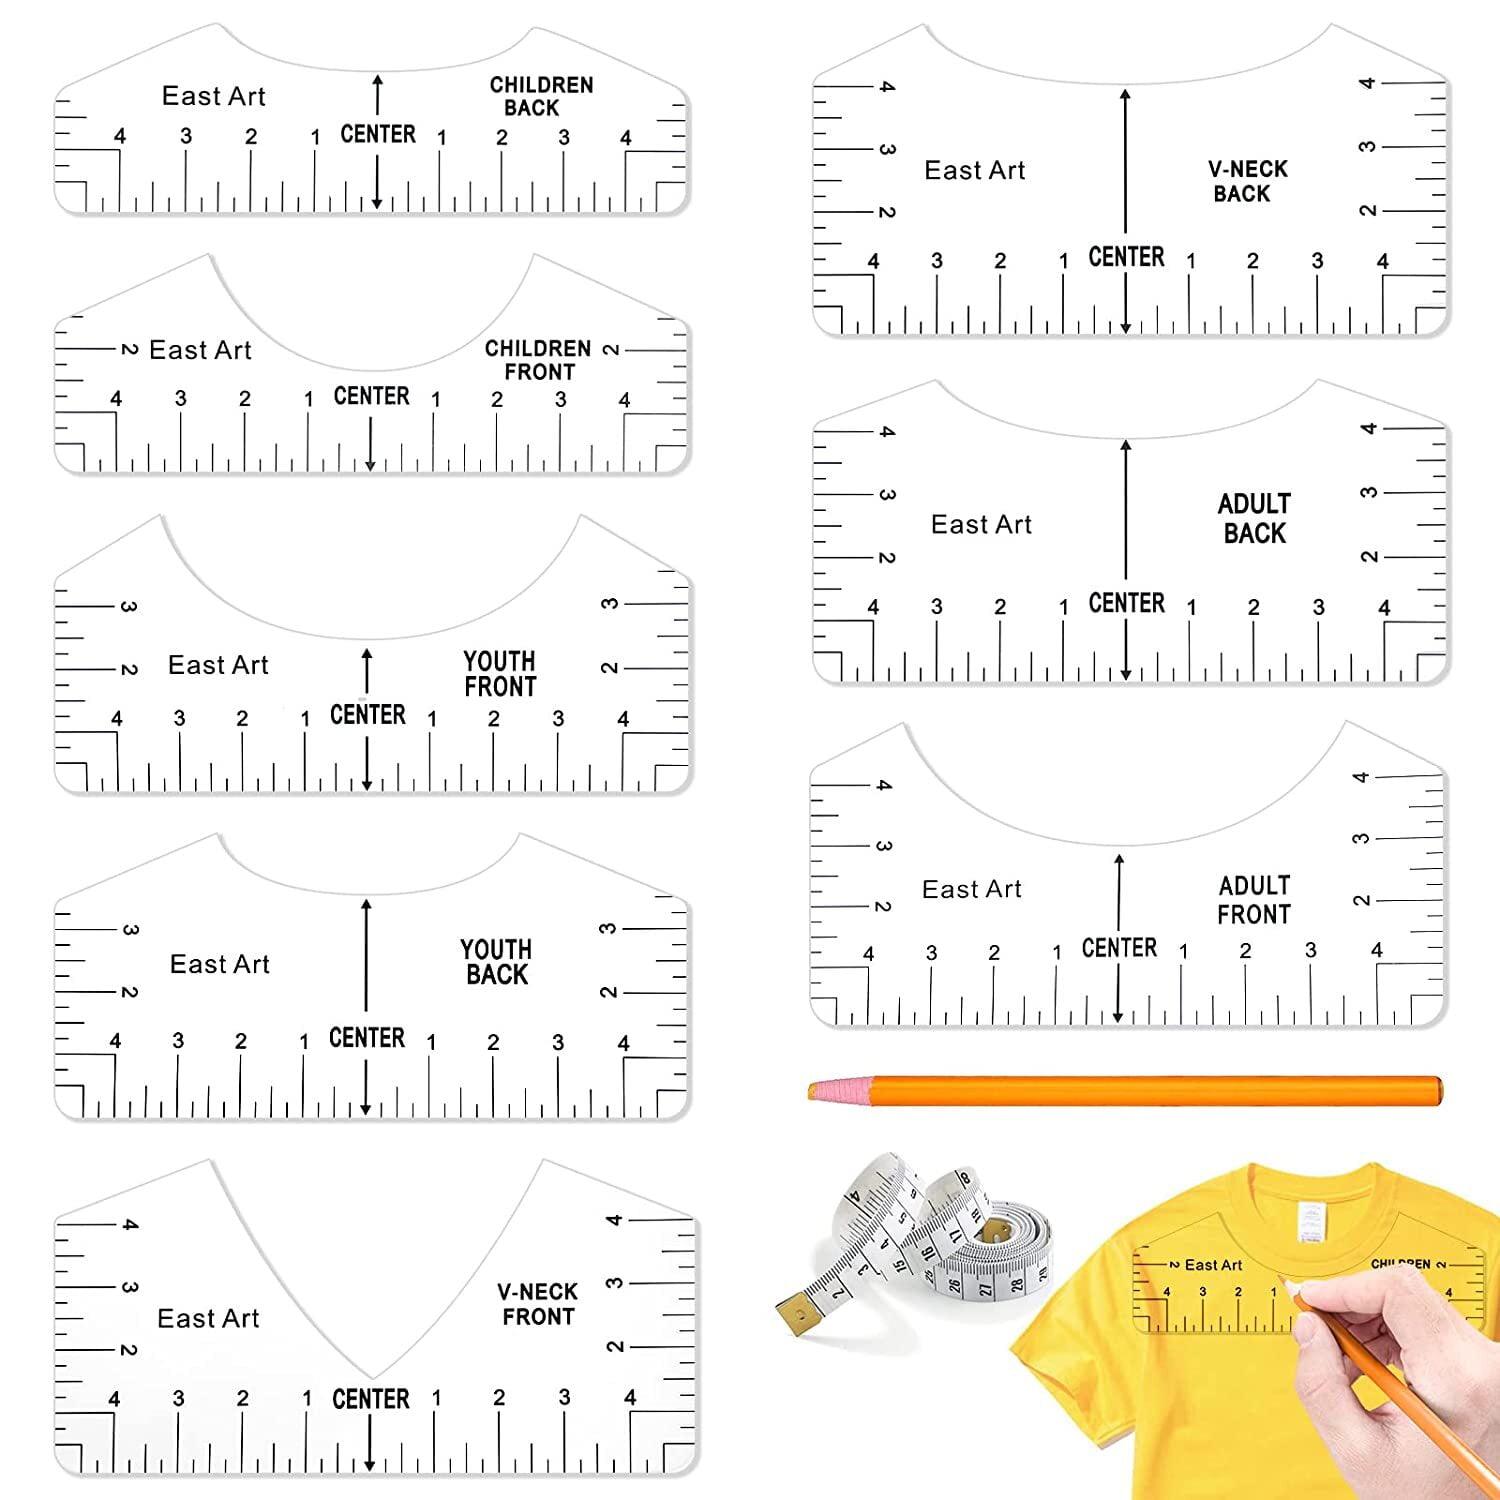 T Shirt Ruler Guide Acrylic  T-shirt Ruler Guide For Heat Press